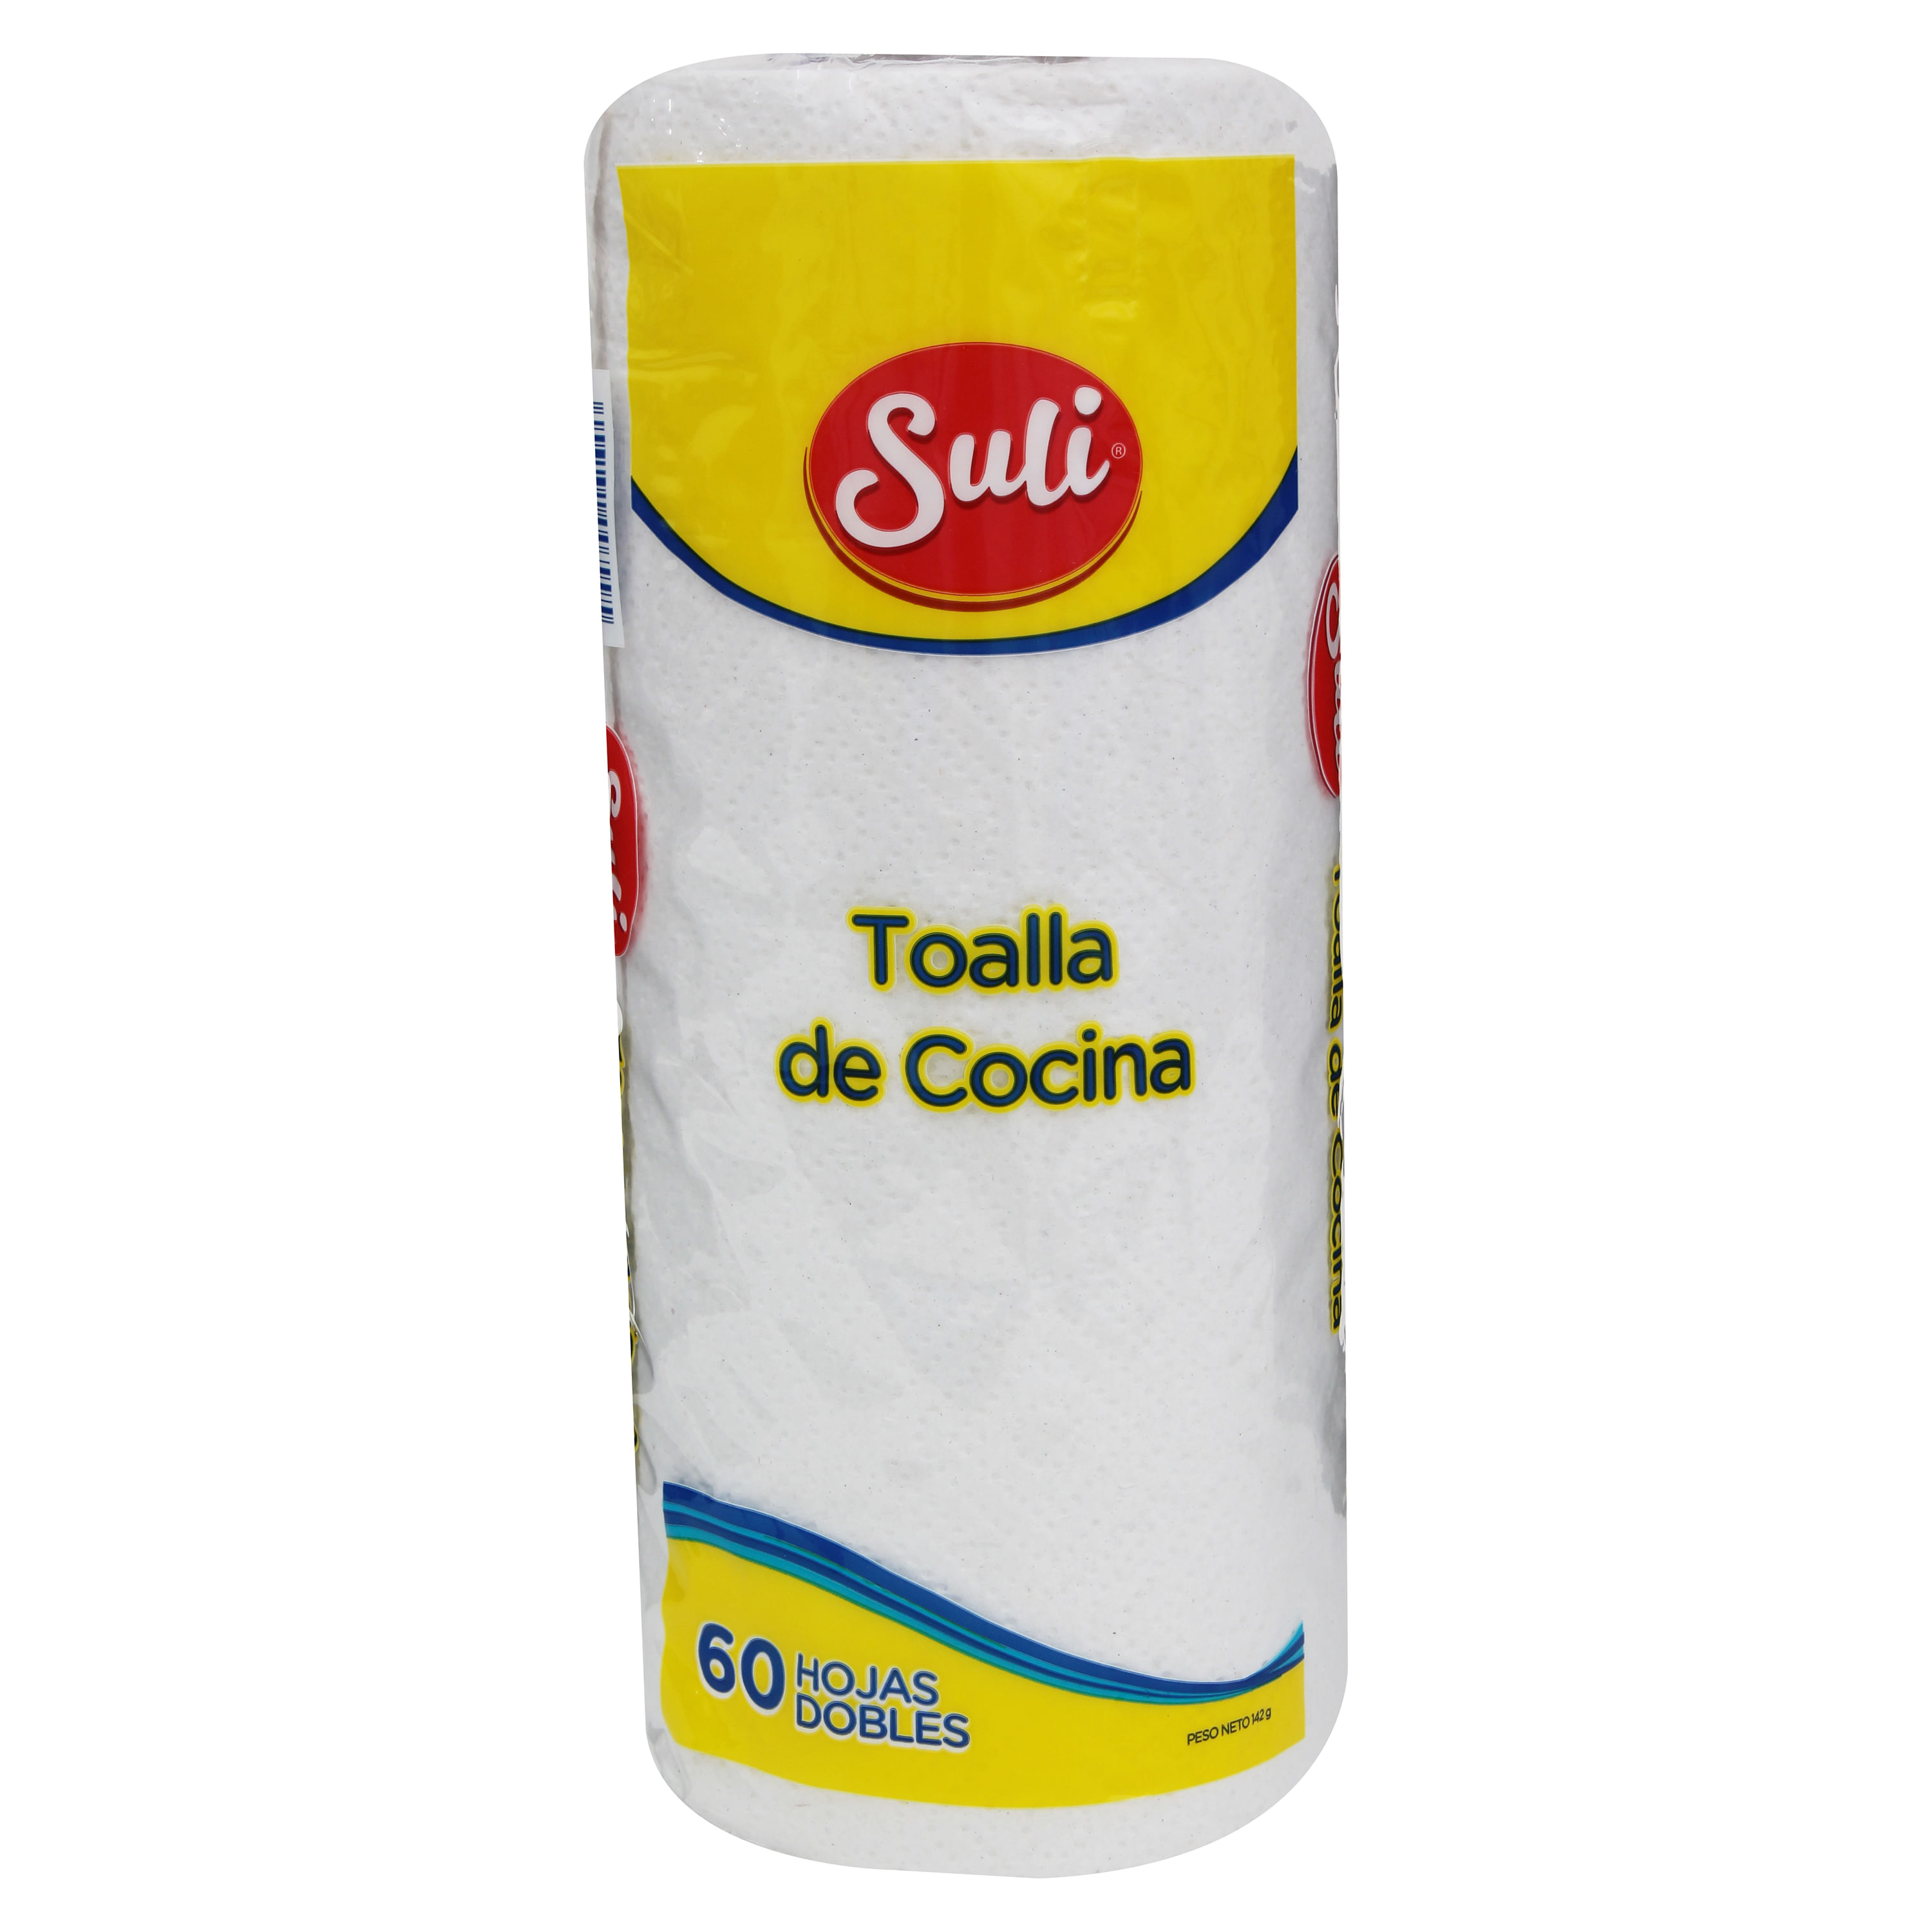 DeTodo Honduras - ¡Tenemos todo para equipar tu cocina!🤩 Encuentra en  nuestras tiendas el porta papel toalla L.35 y el rollo de papel toalla de  80 hojas a L.29🙌